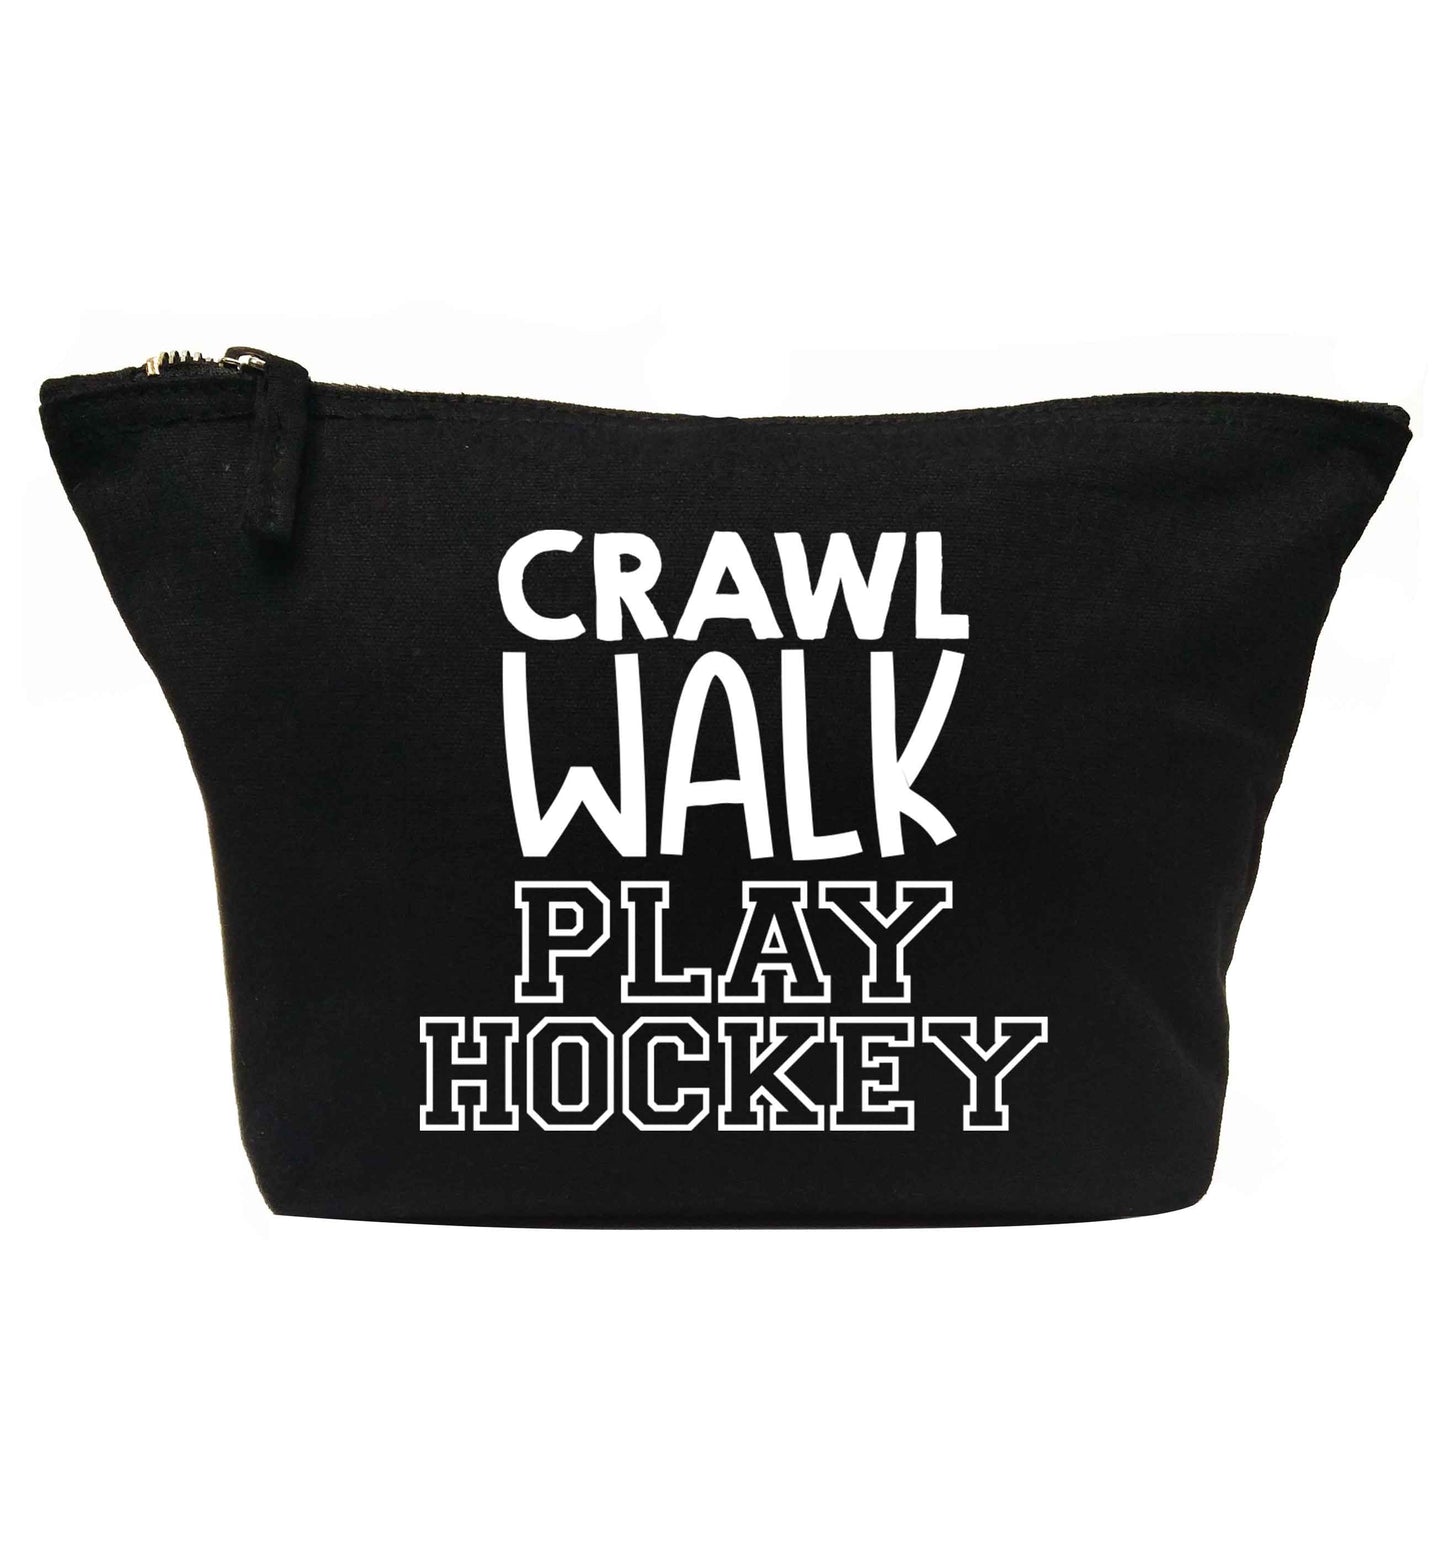 Crawl walk play hockey | makeup / wash bag